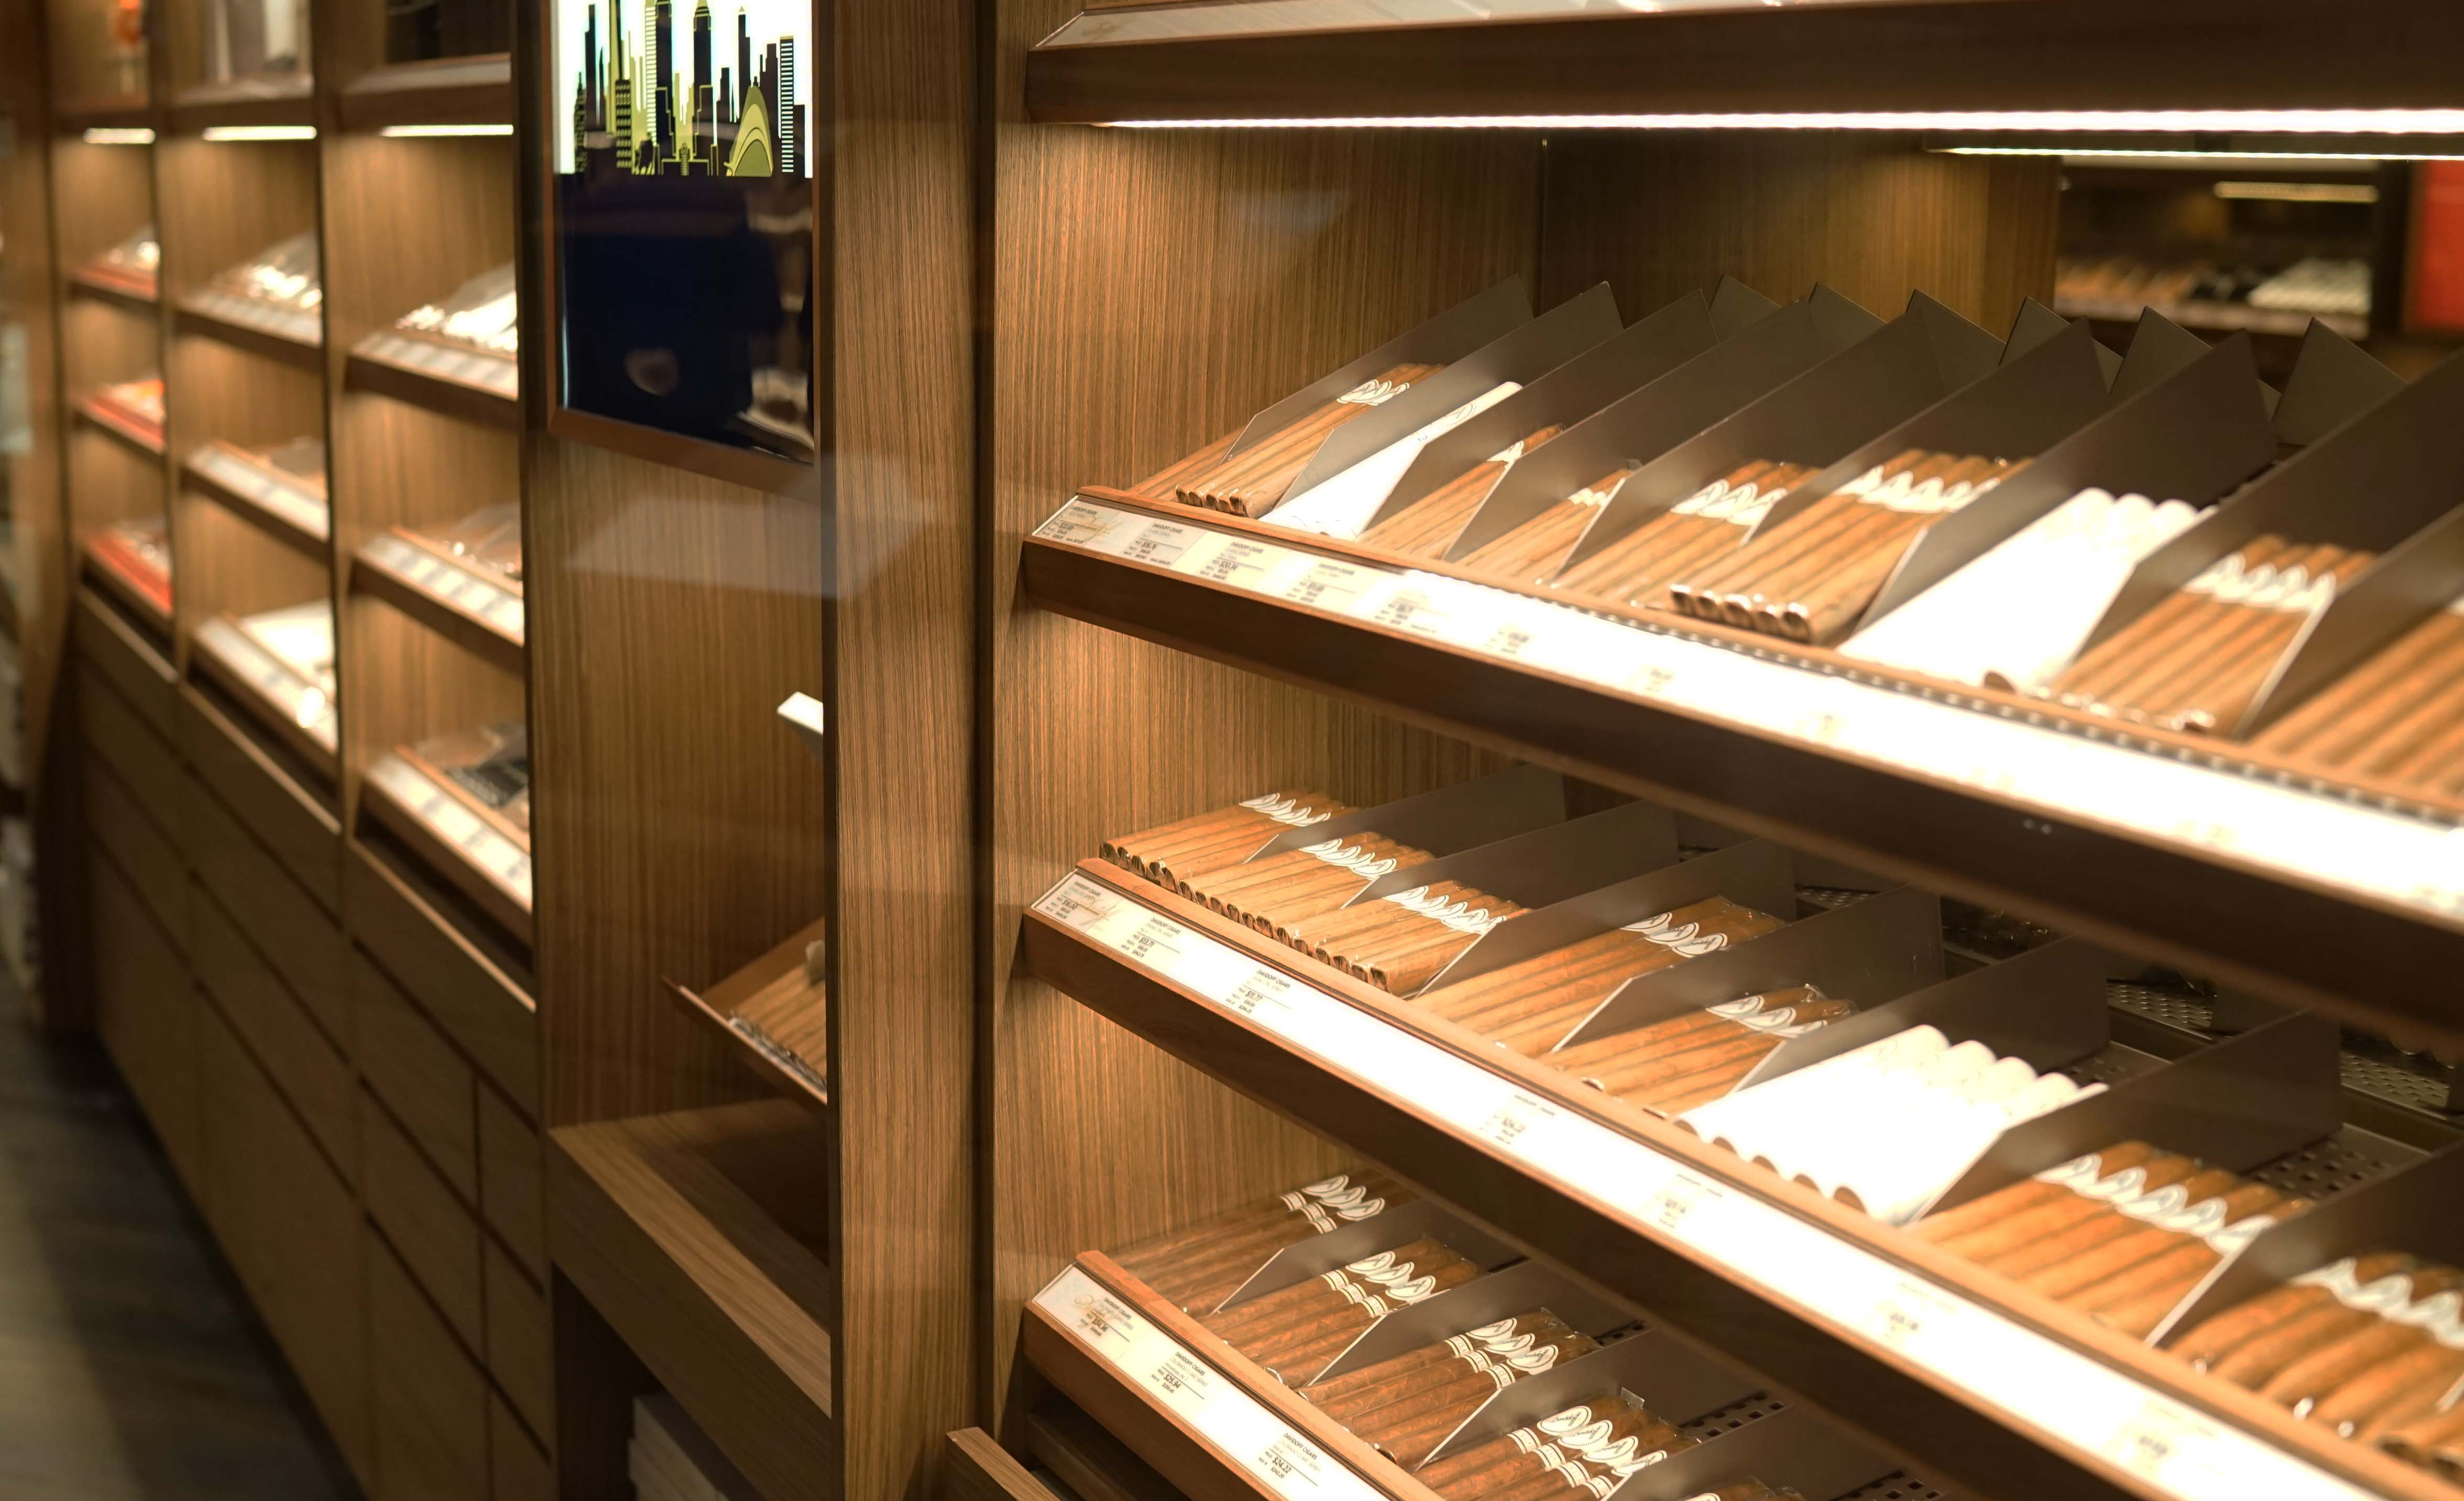 Davidoff of Geneva cigars